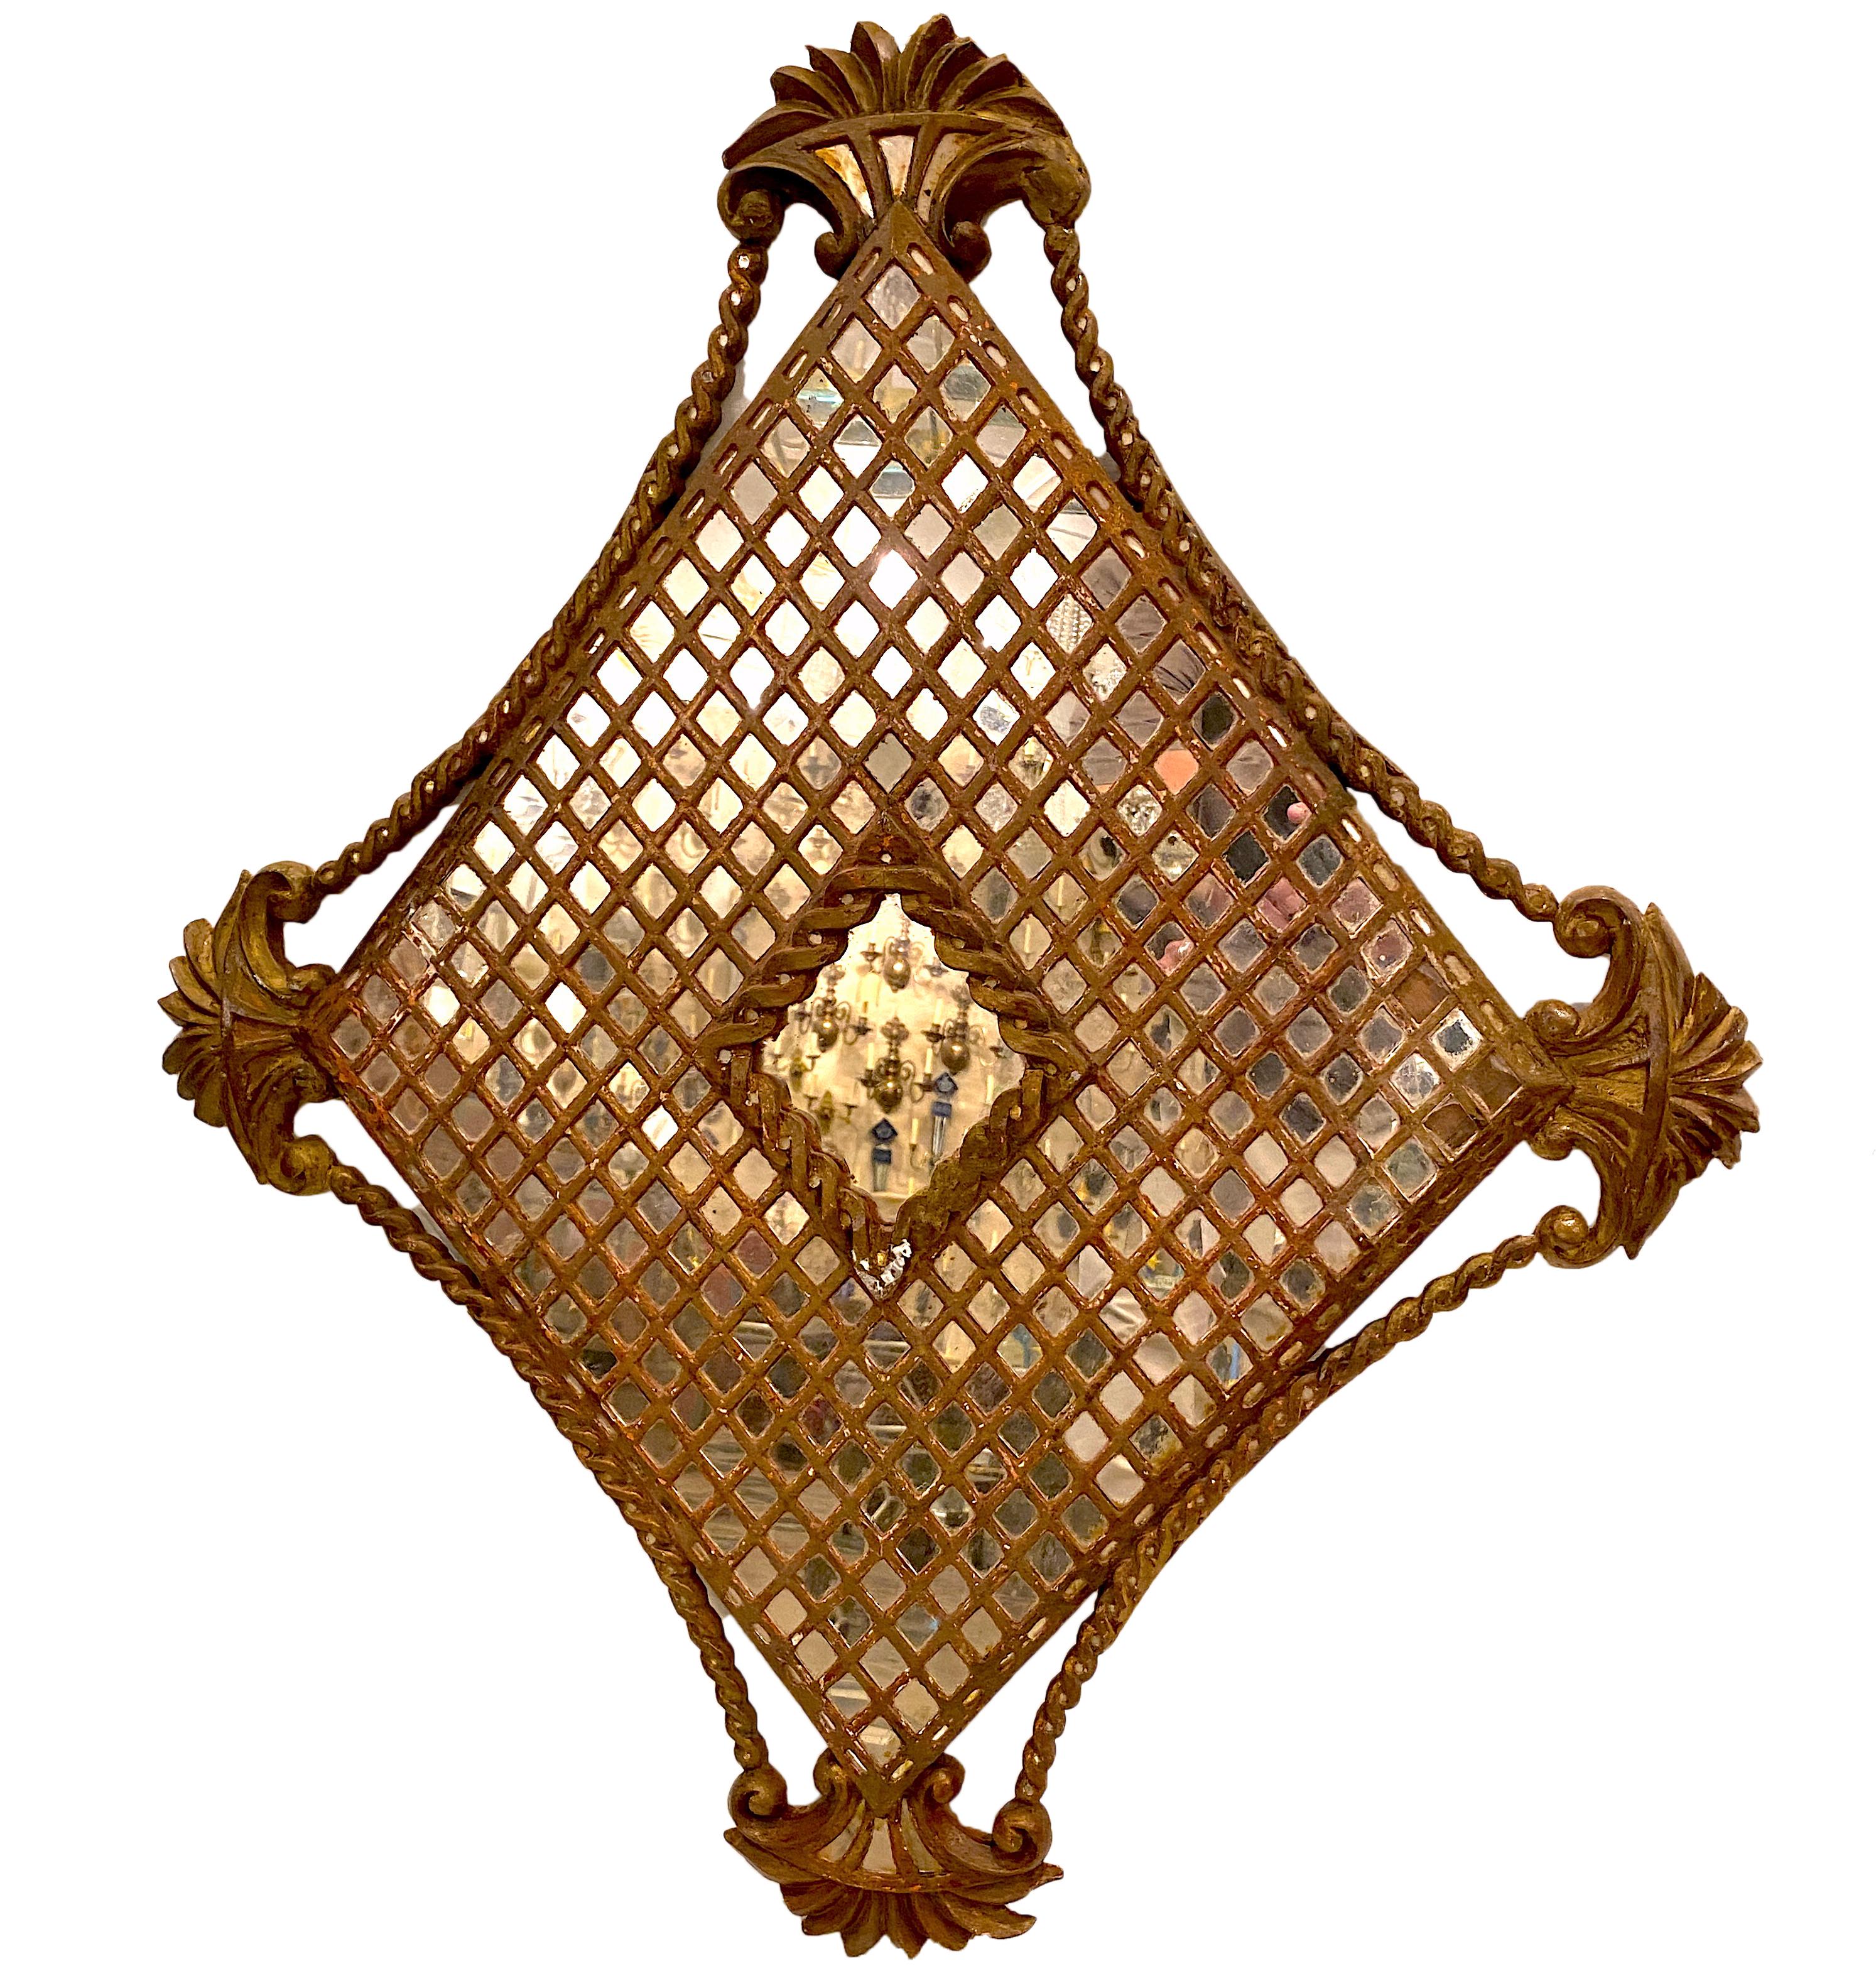 Miroir en bois doré espagnol datant d'environ 1900 avec détails de guirlande.

Mesures :
Hauteur : 37